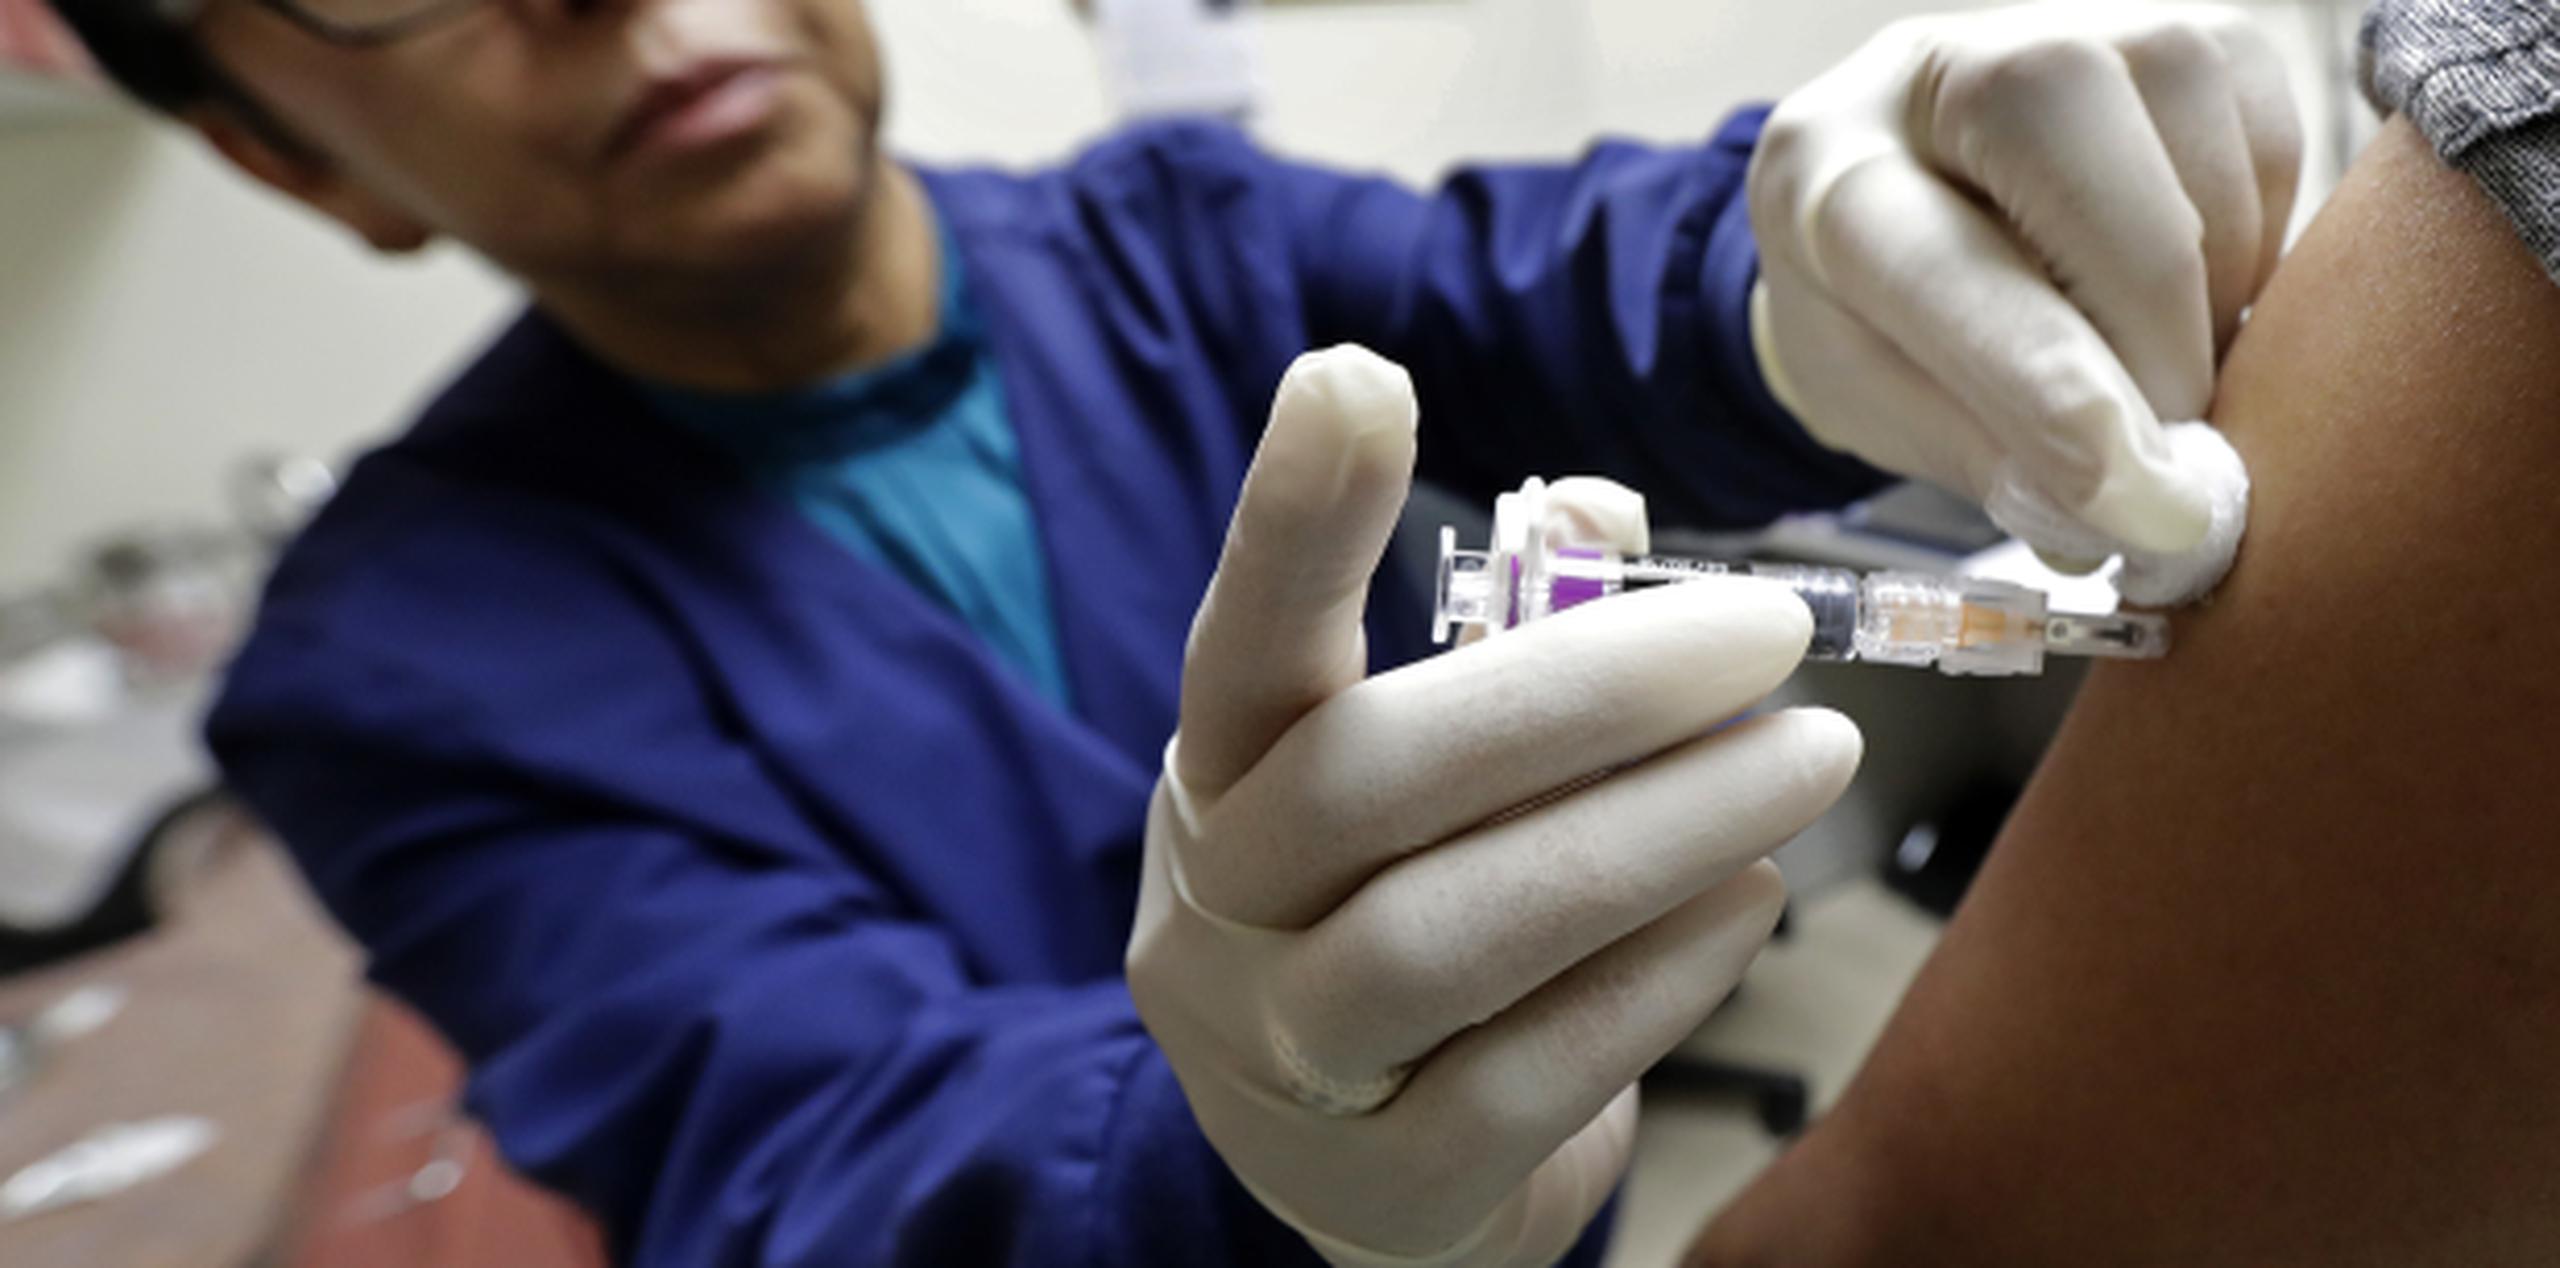 La actual vacuna ha mostrado poca efectividad contra la cepa H3N2, que es la predominante. (Archivo)